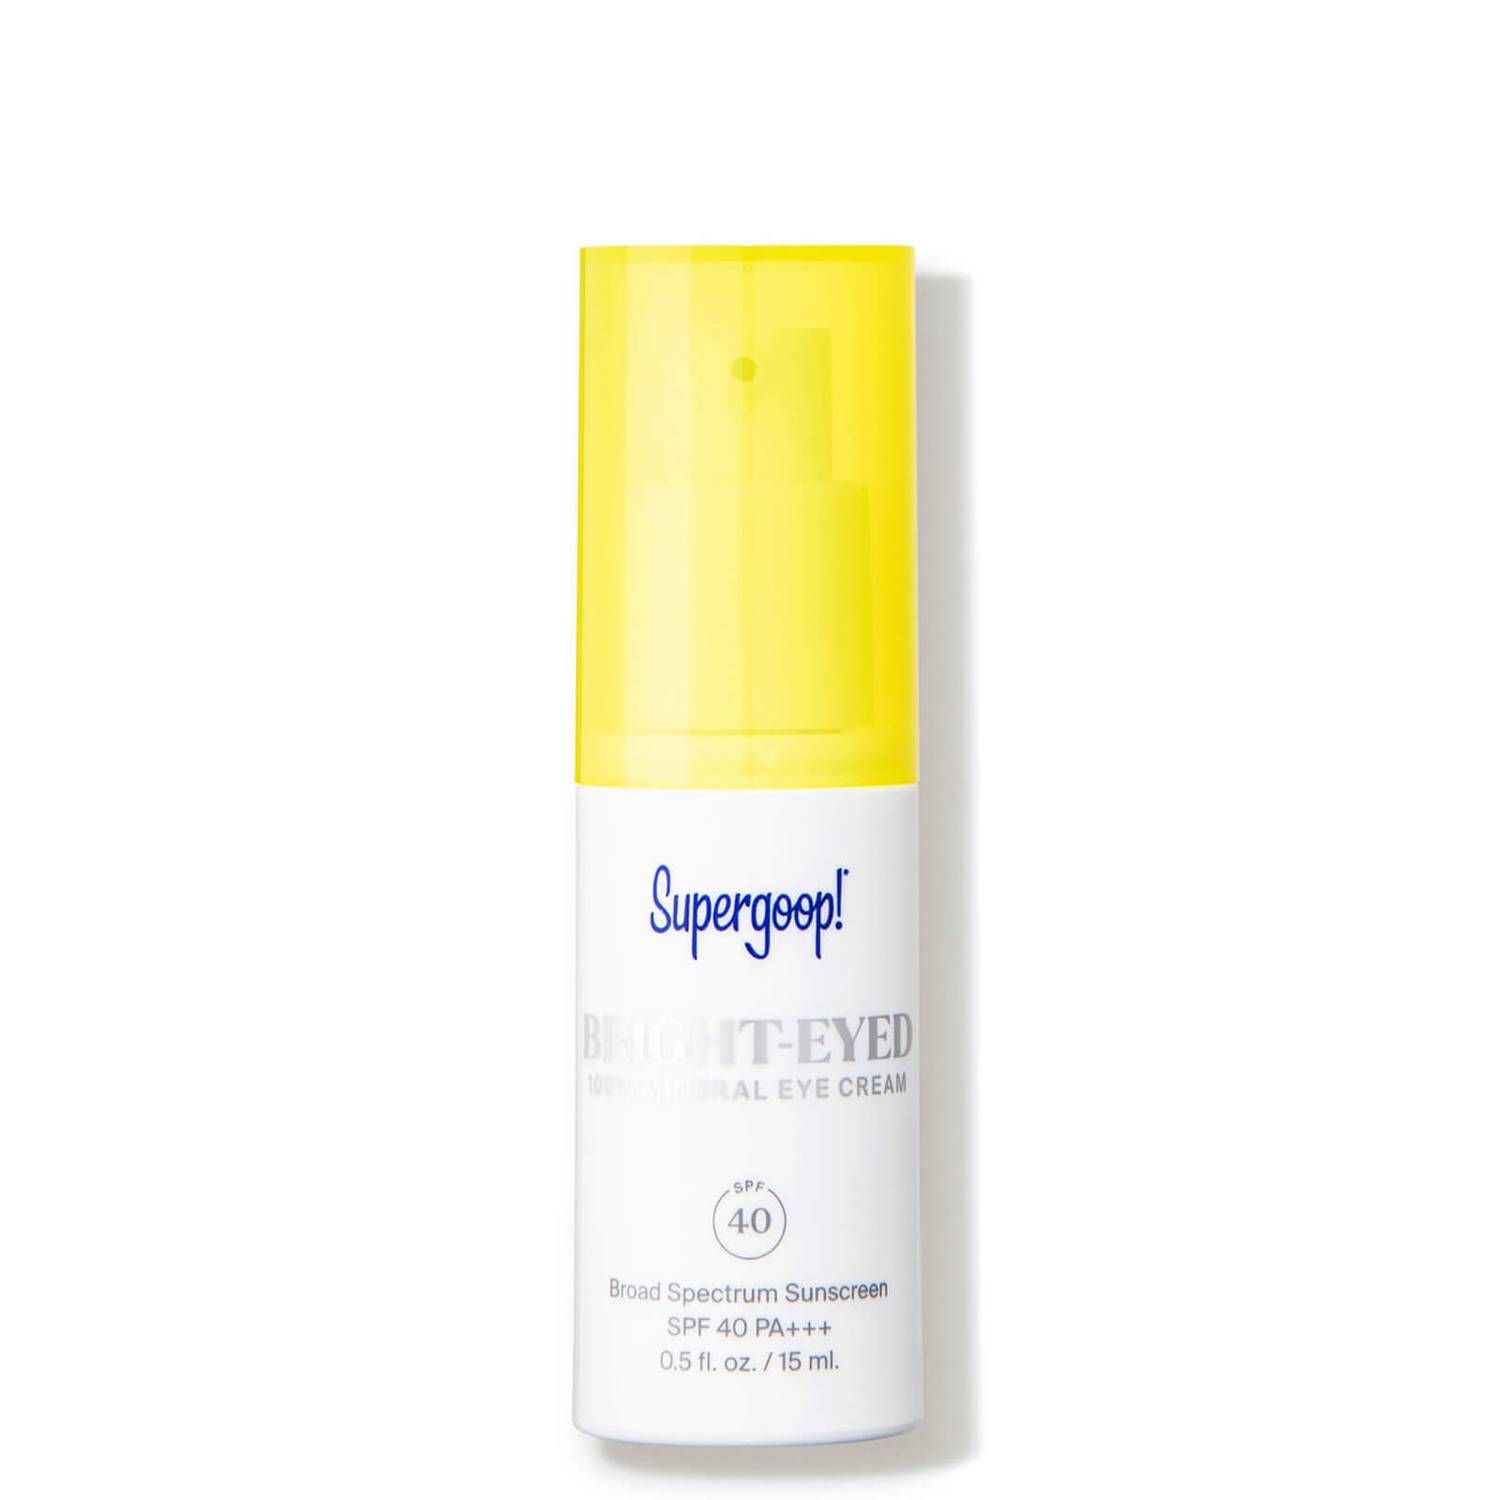 Supergoop!® Bright-Eyed 100 Mineral Eye Cream SPF 40 0.5 fl. oz. | Dermstore